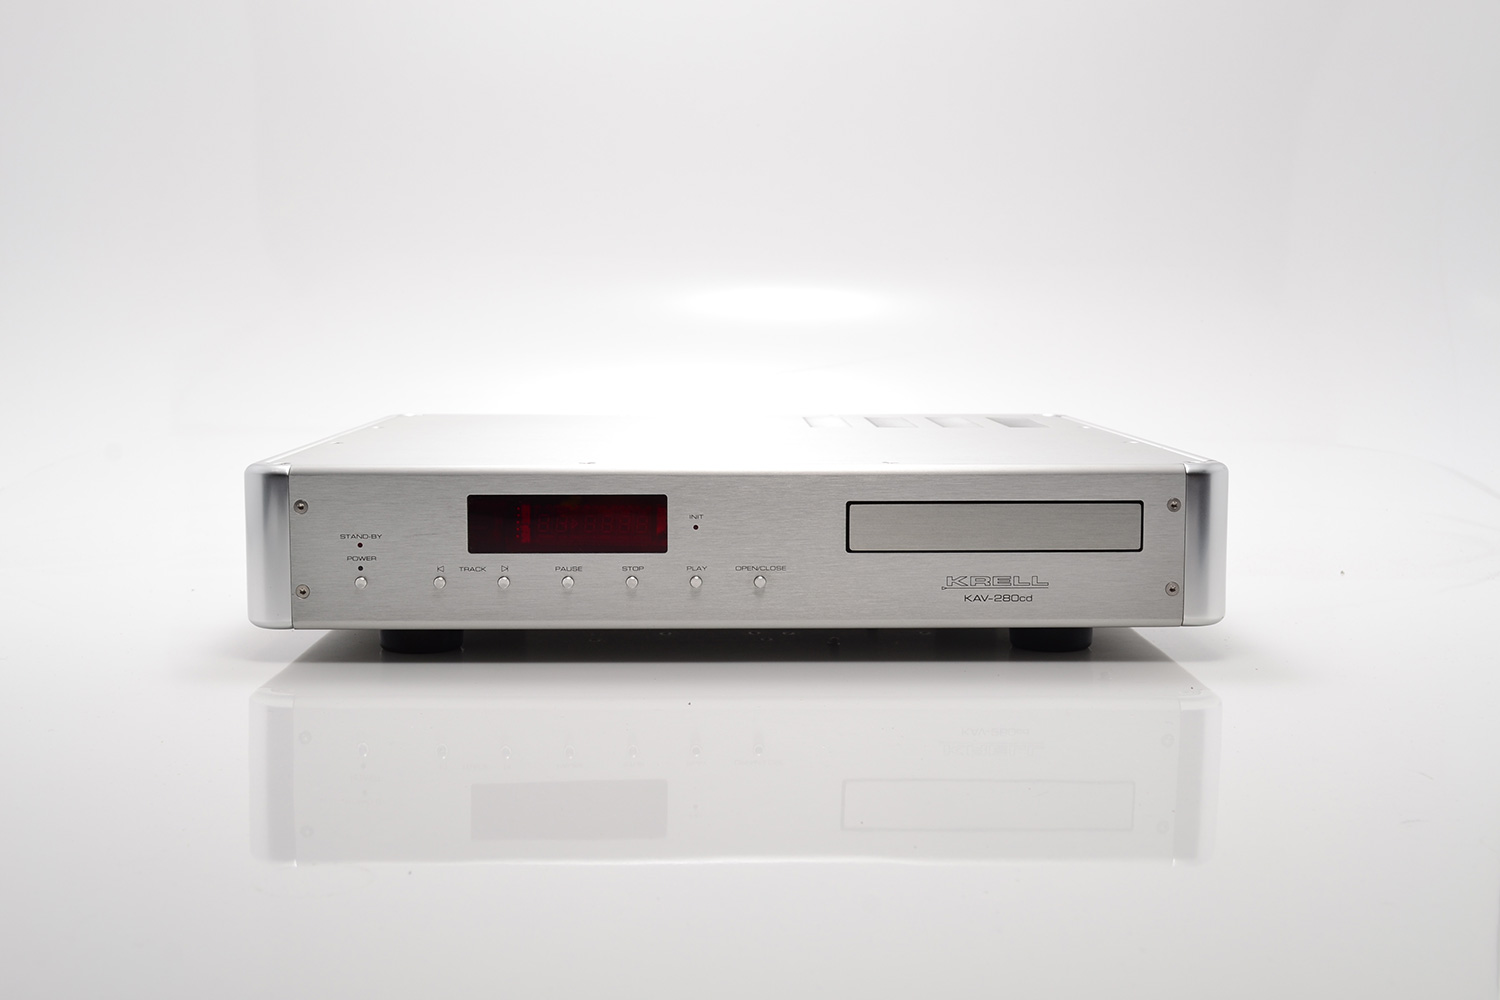 Krell KAV 280cd – High End Stereo Equipment We Buy